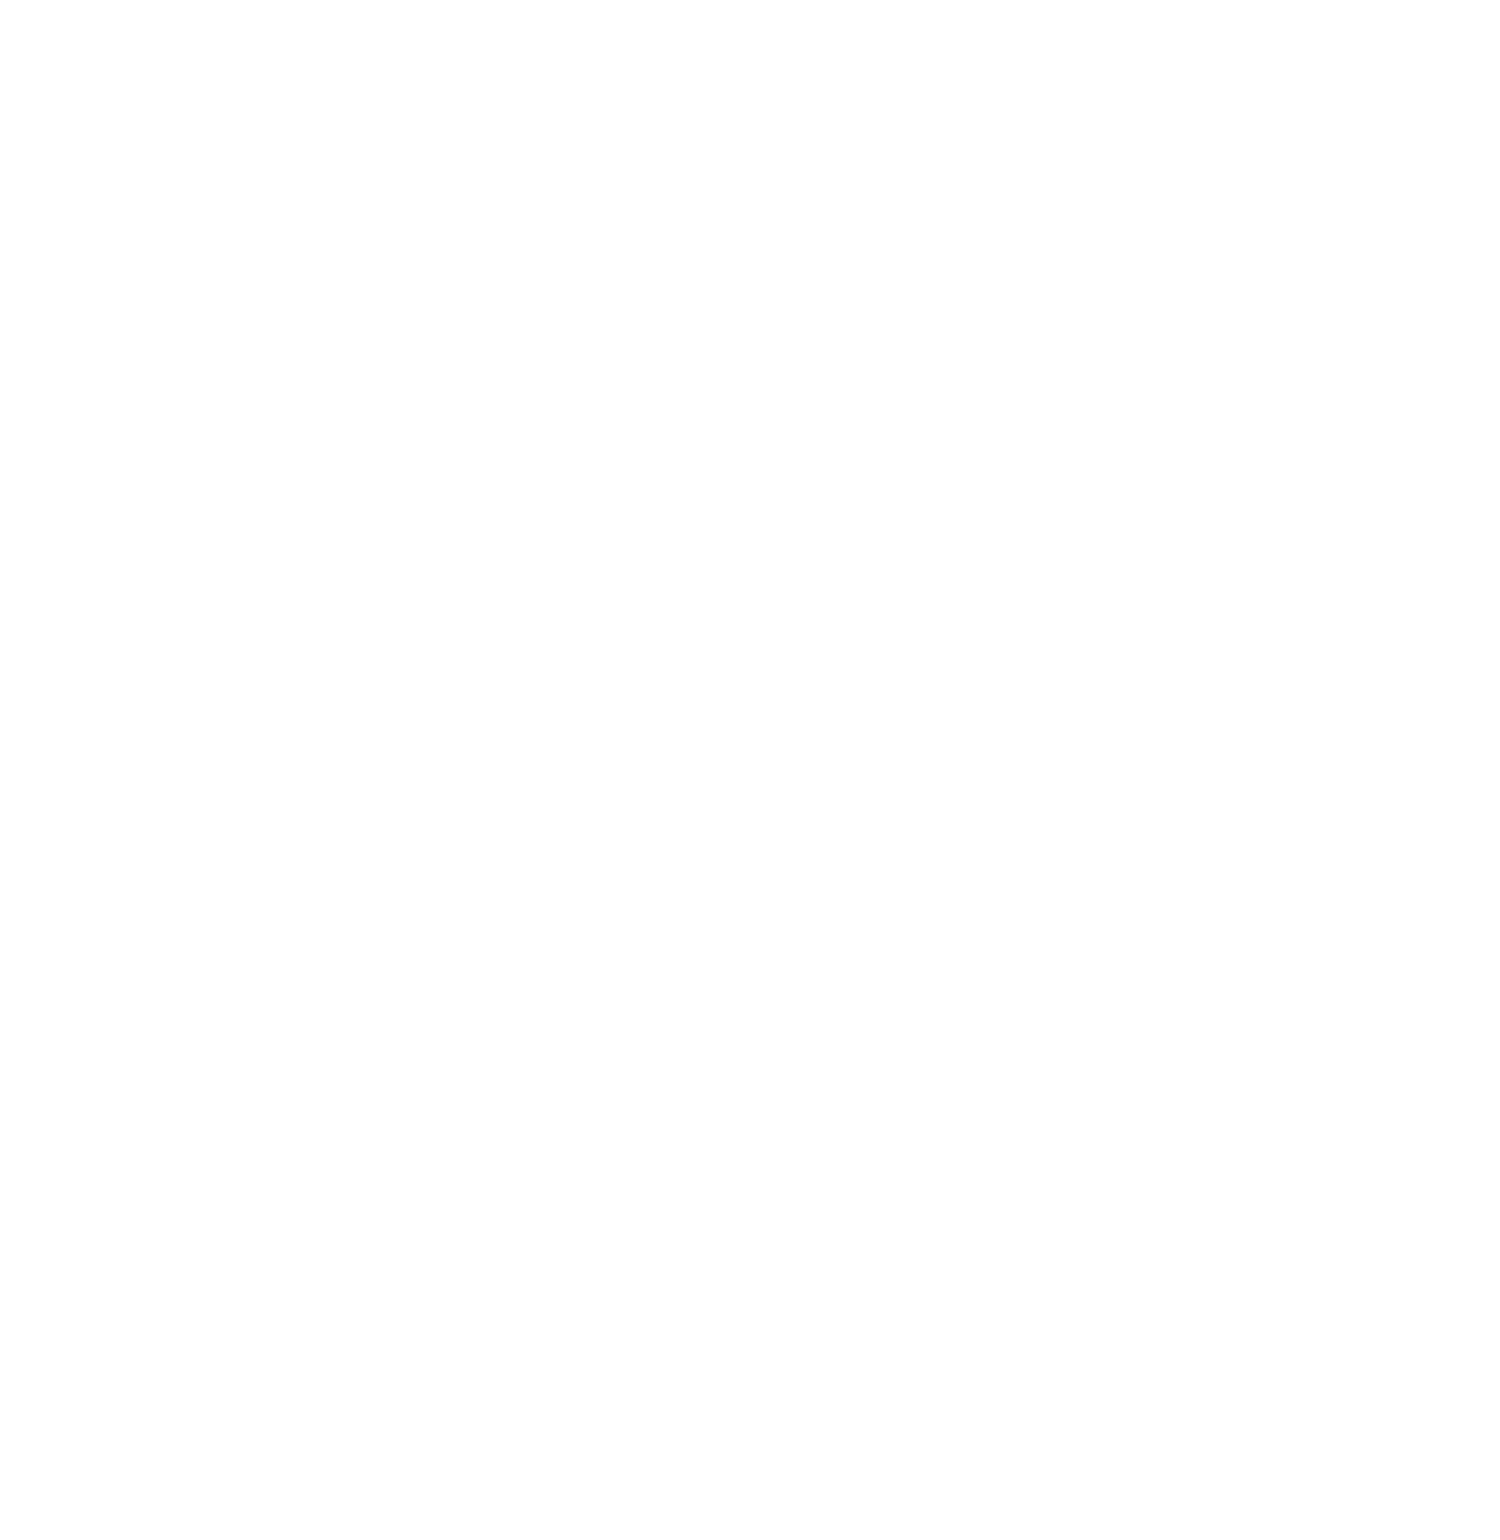 Wildwood Trees & Timber